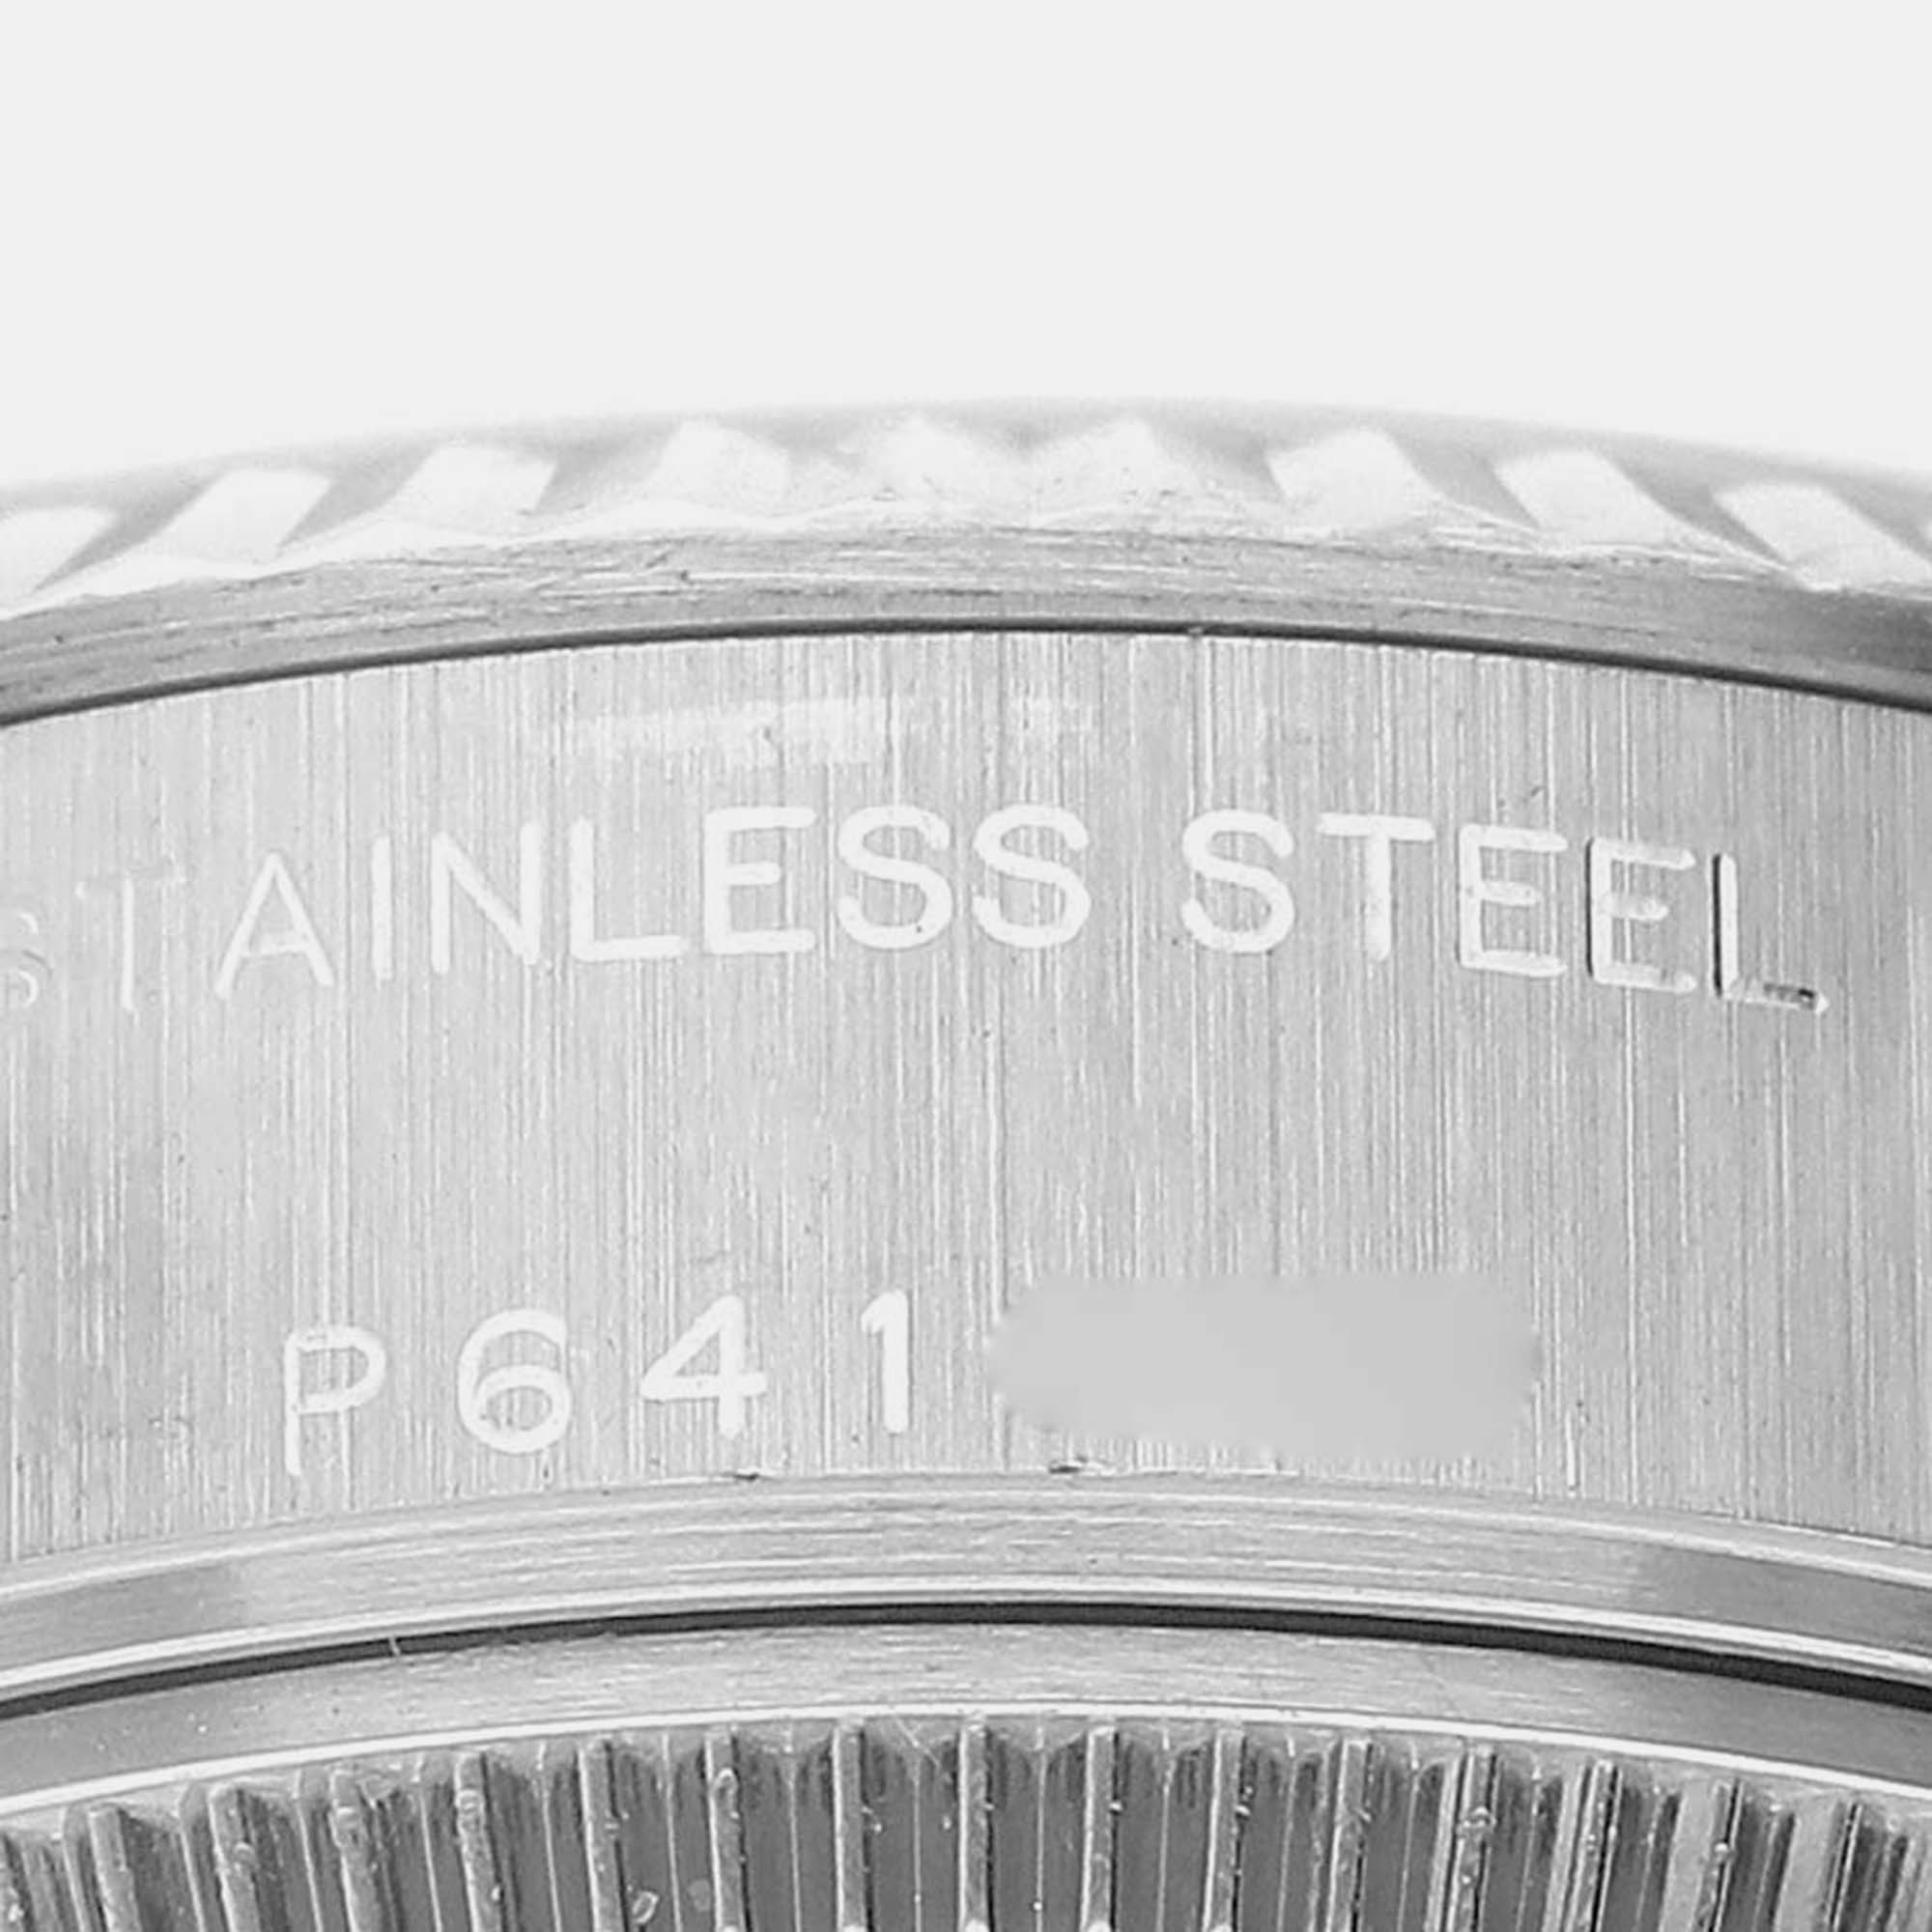 Rolex Datejust Steel White Gold Diamond Dial Ladies Watch 79174 26 Mm